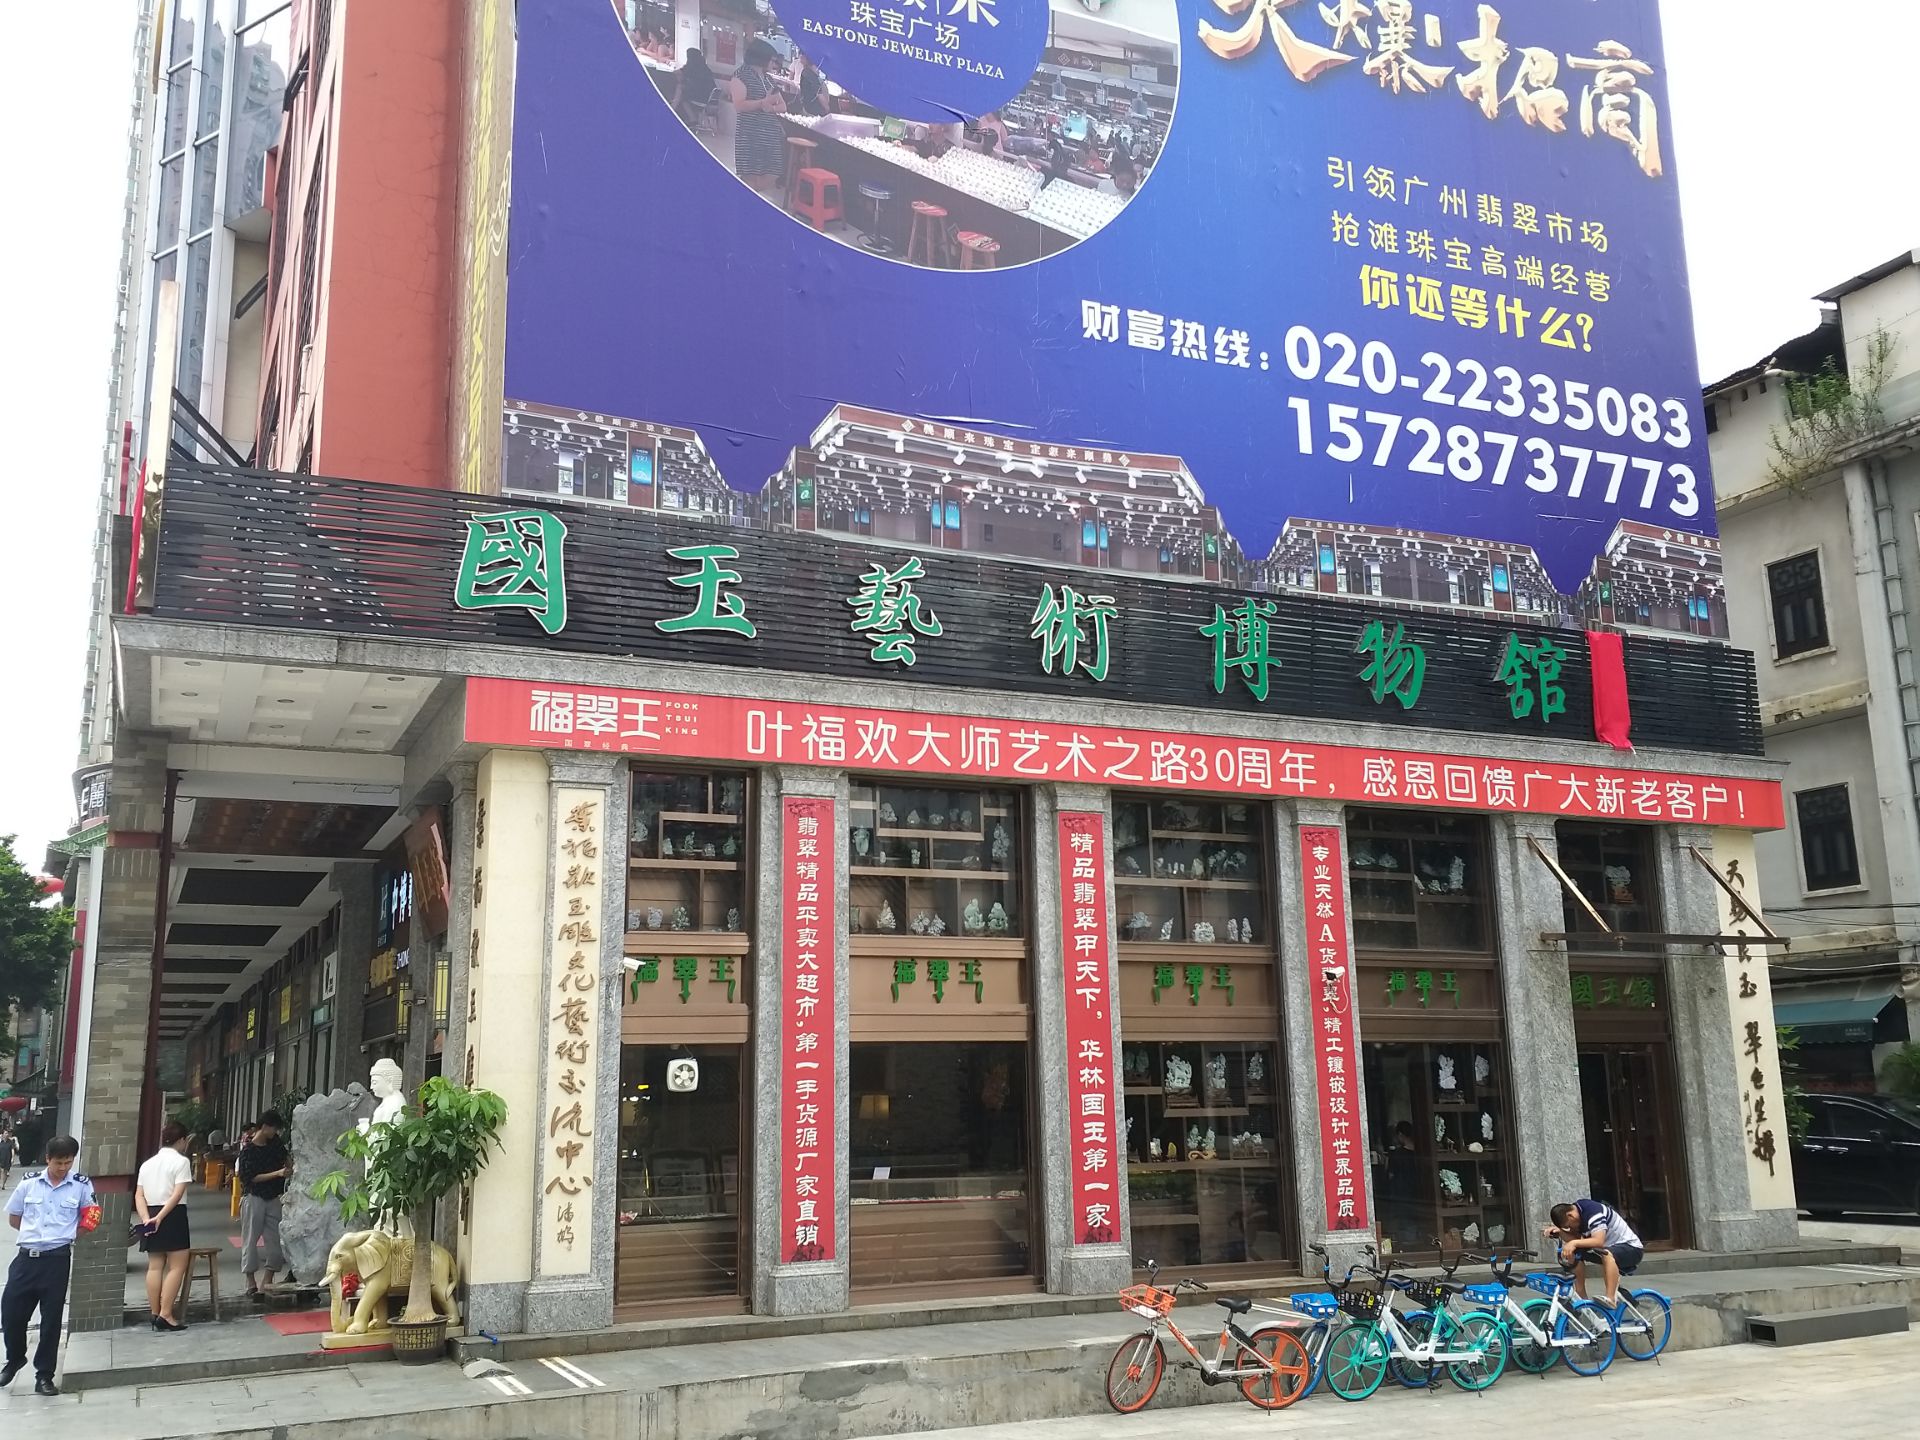 华林玉器街,位於广州市华林禅寺旁,是全国最大之玉器批发及零售市场